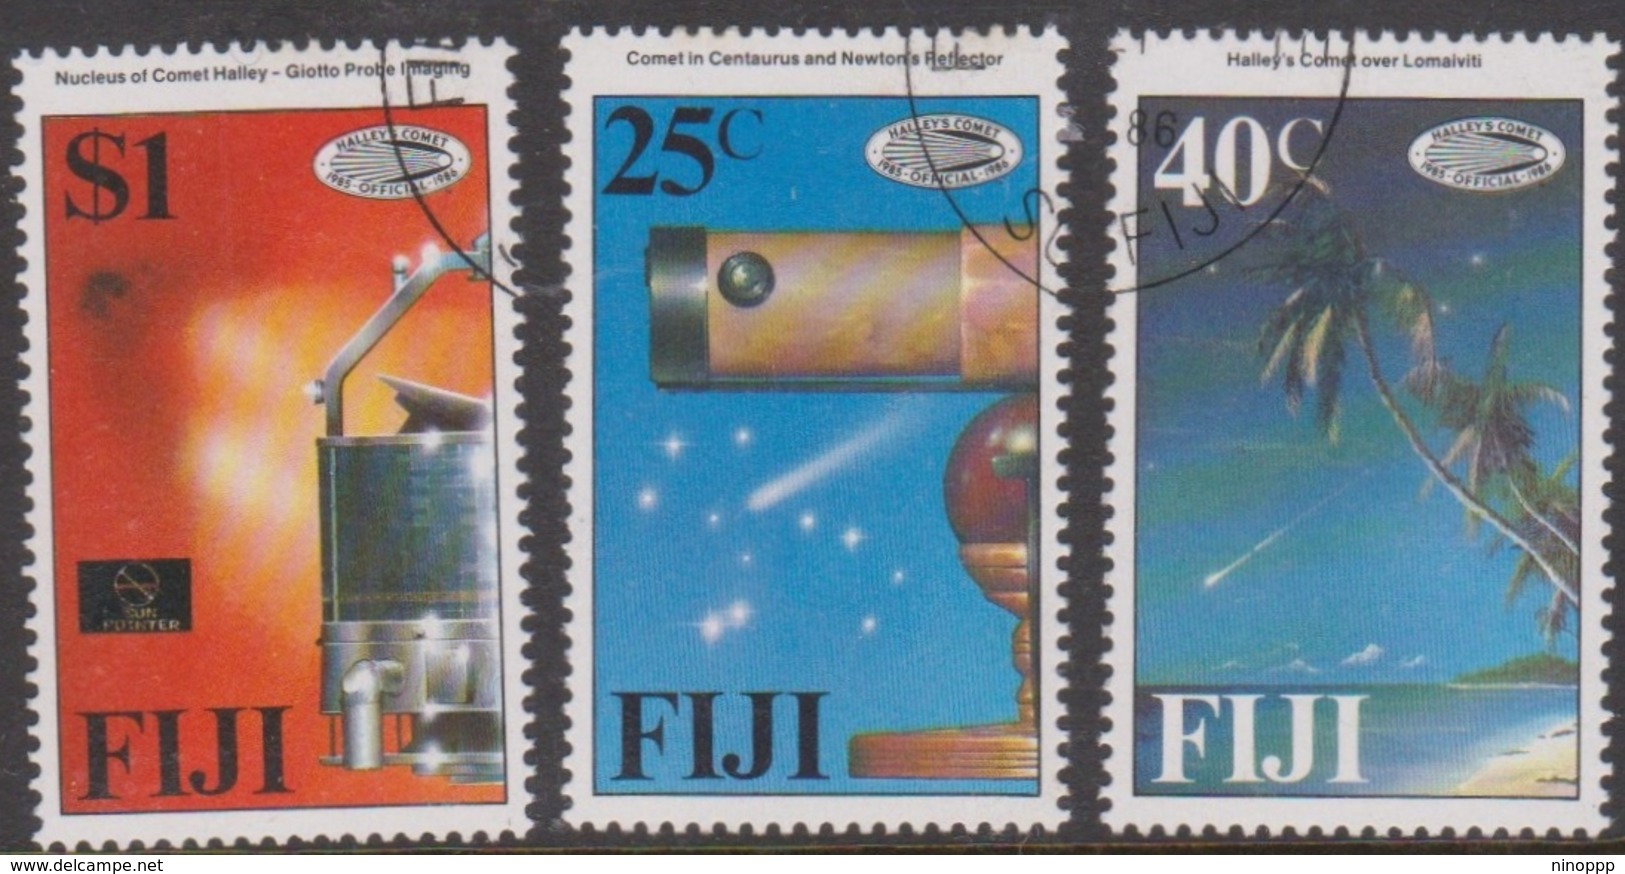 Fiji SG 738-740 1986 Halley's Comet, Used - Fiji (1970-...)